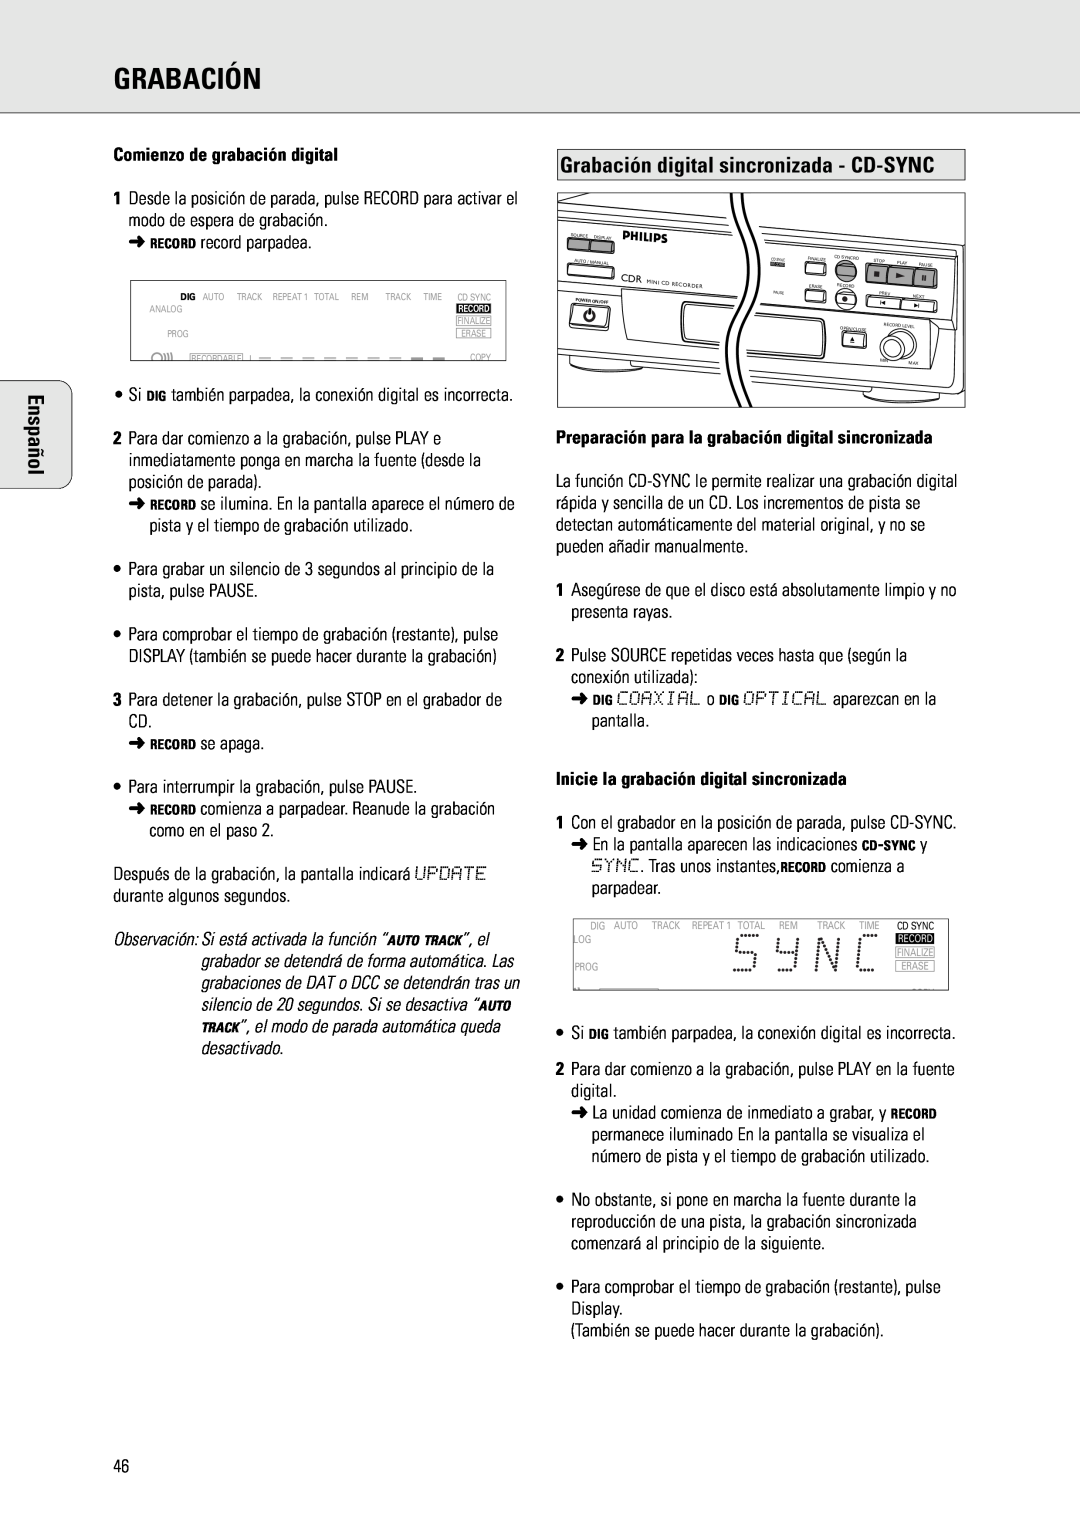 Philips CDR 560, CDR 538 manual Comienzo de grabación digital, Grabación digital sincronizada - CD-SYNC, Enspañol 